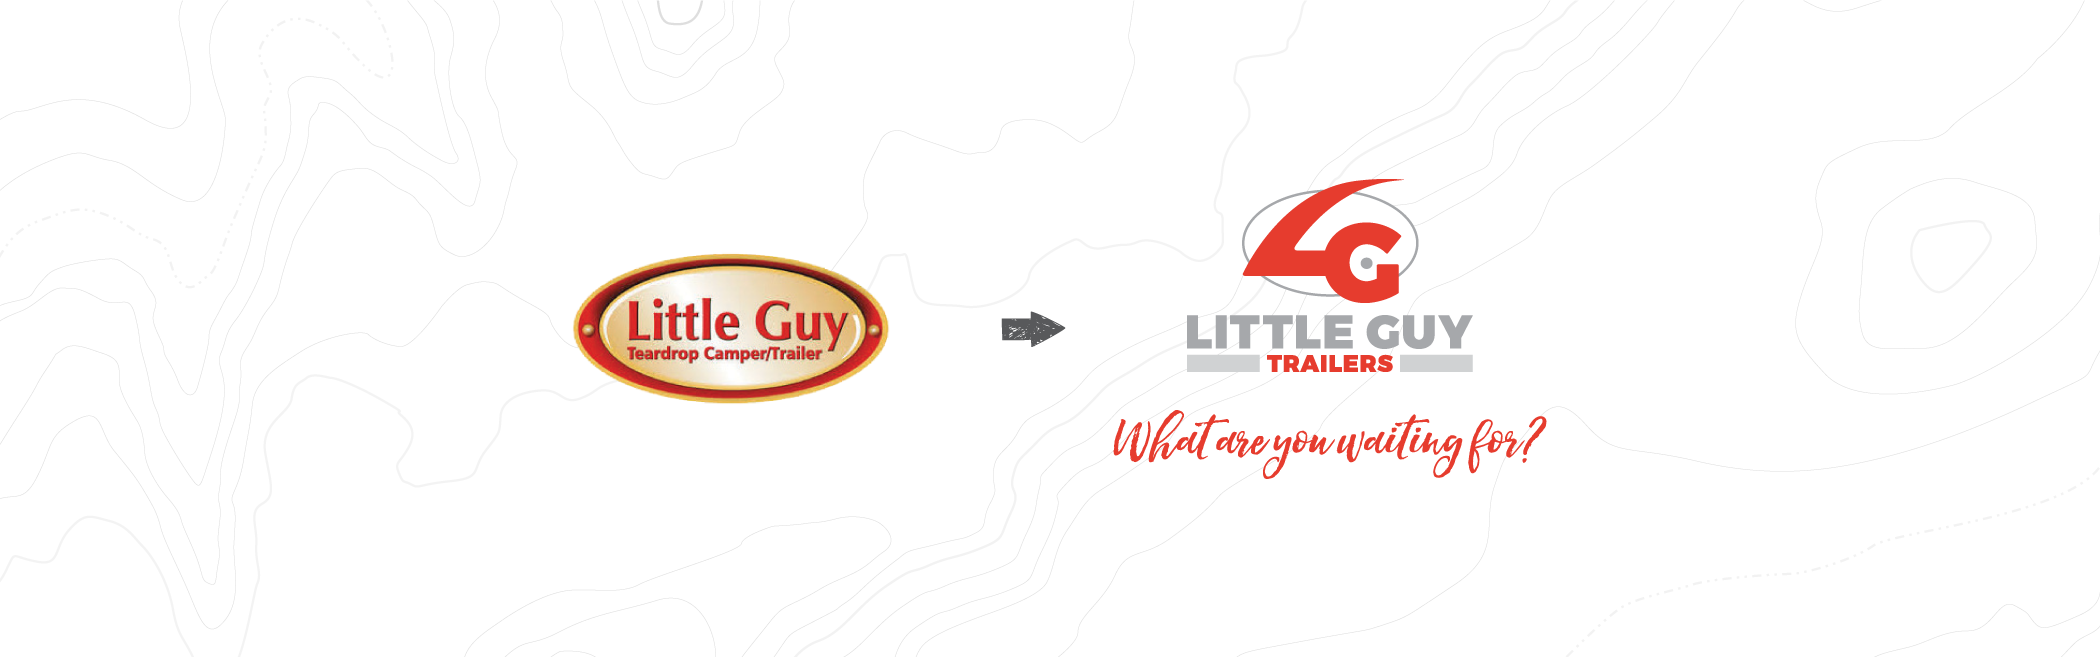 Little Guy Trailers - logo